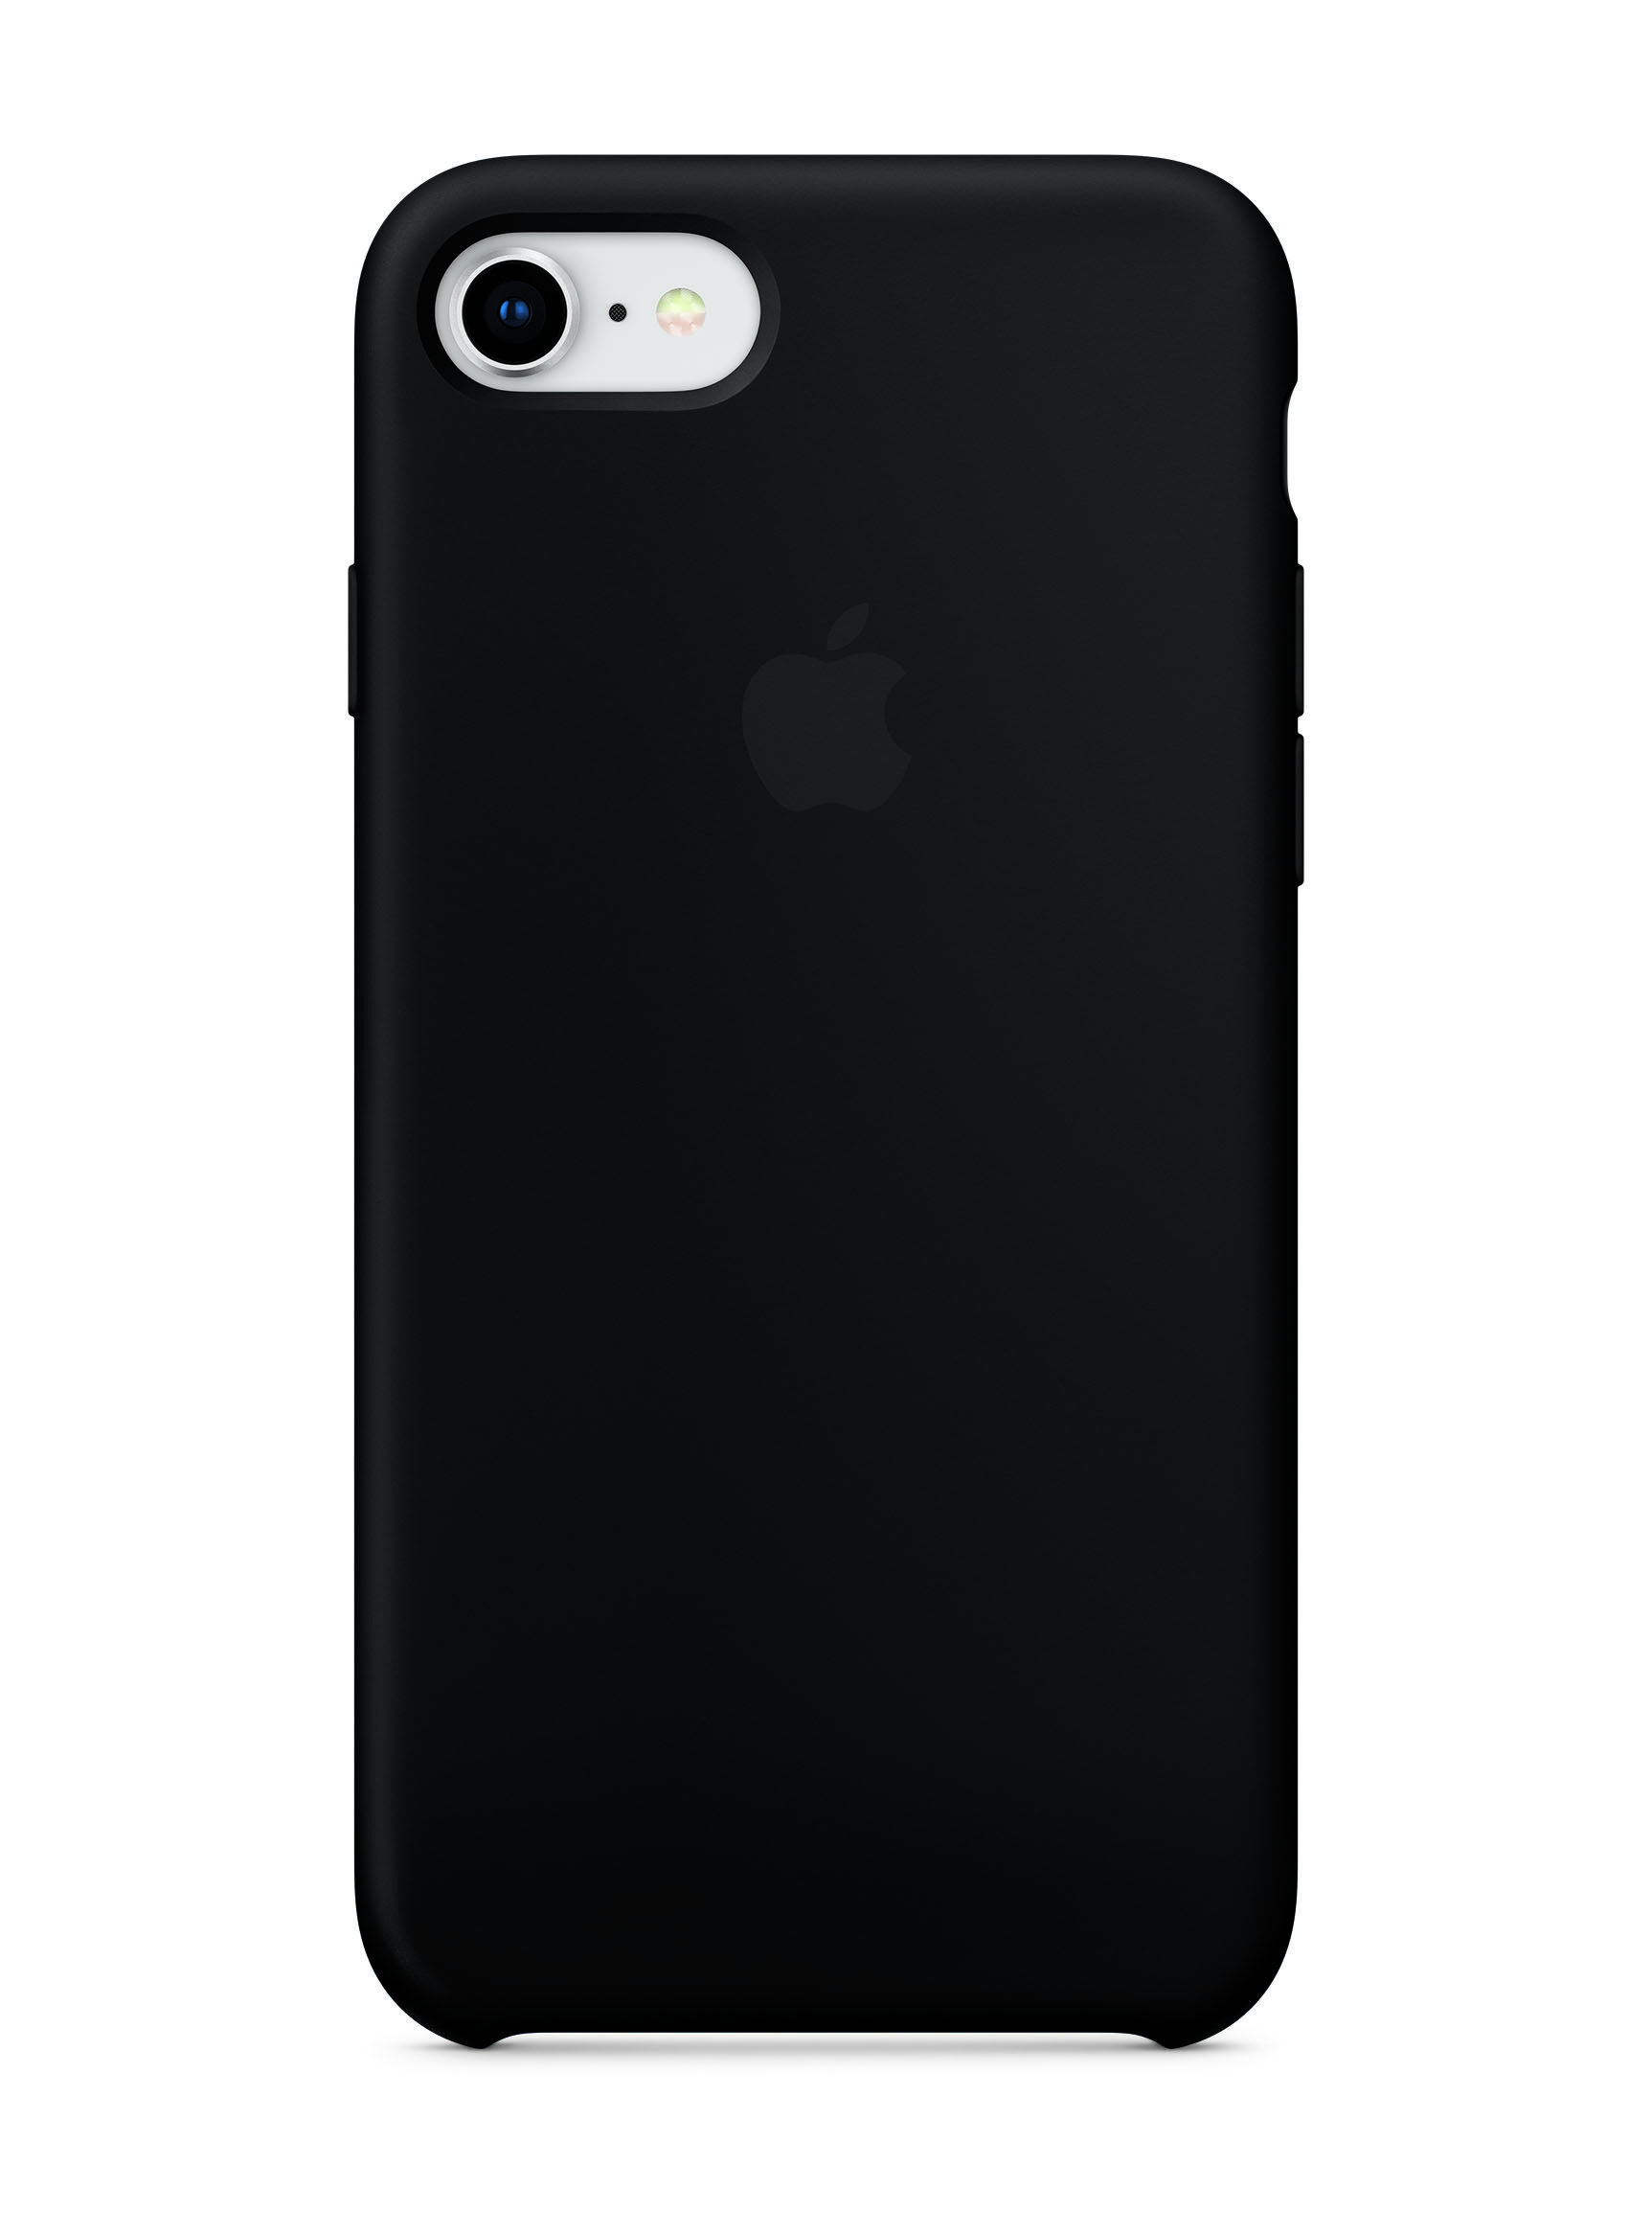 Carcasa Silicona Apple iPhone 7/8 Negro - Accesorios de Celulares